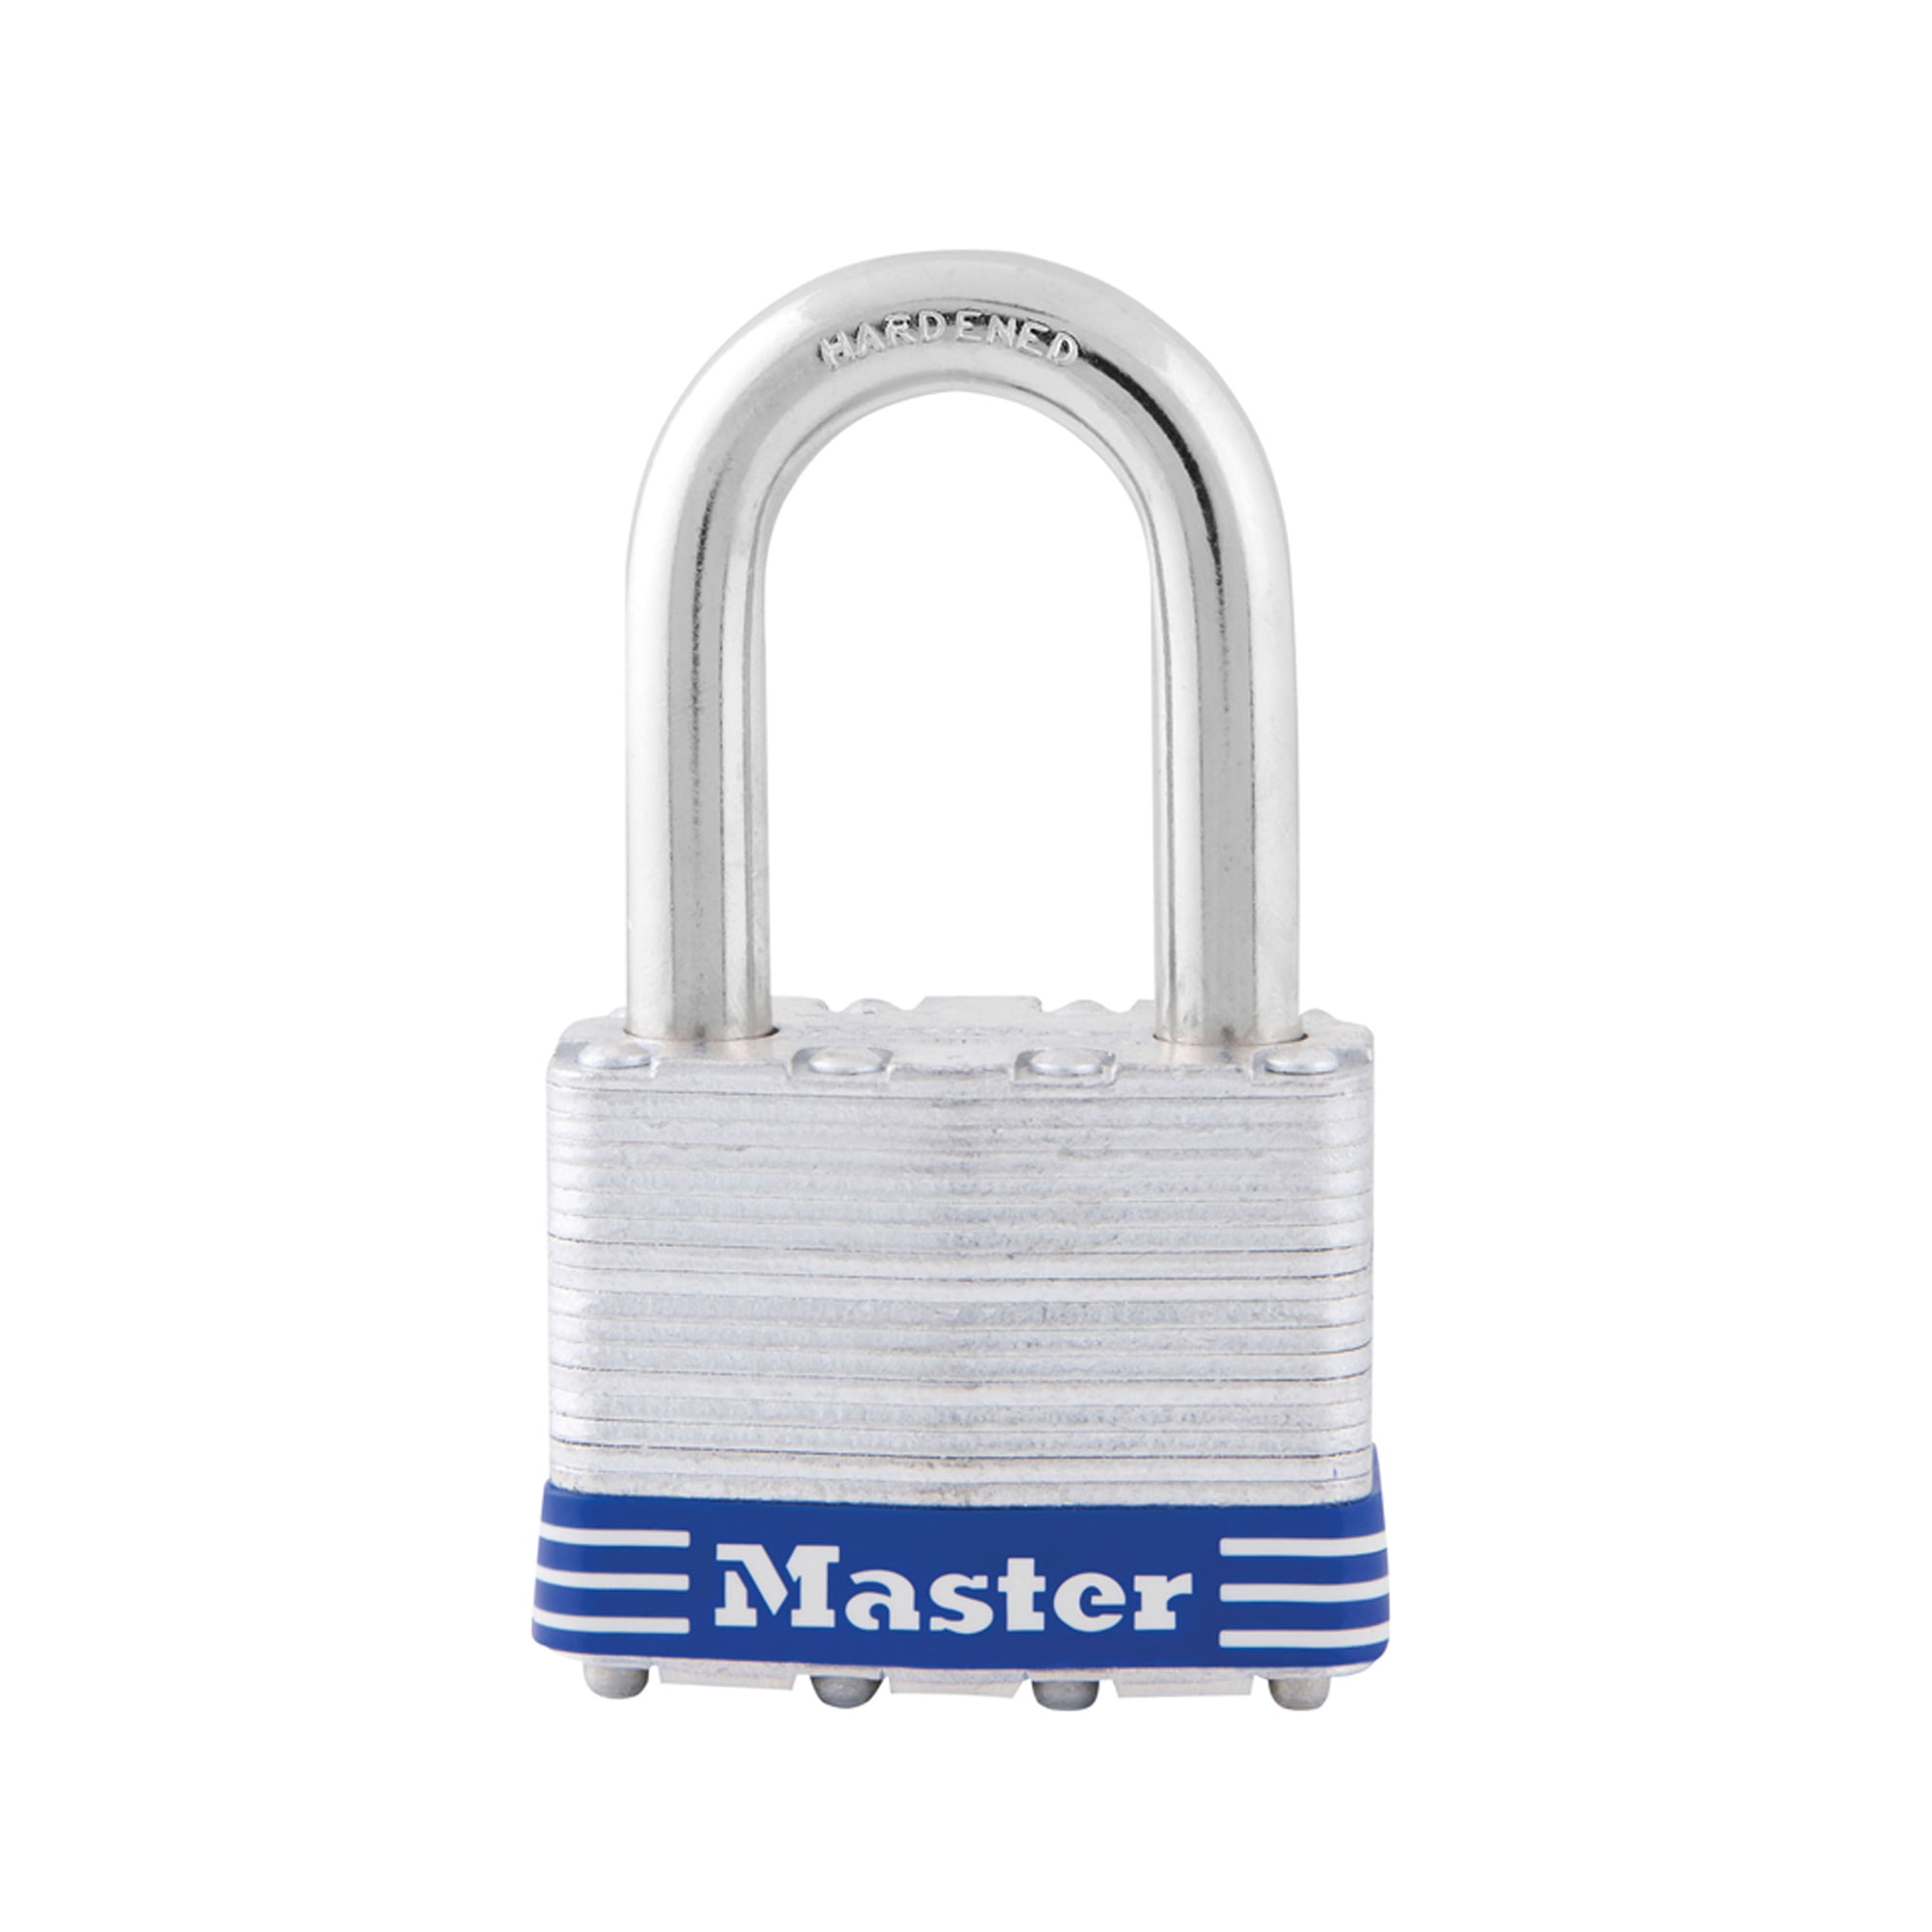 Master Lock Keyed Alike Laminated Steel Pin Tumbler Padlock 3-Pack #3,No 3TRILF 